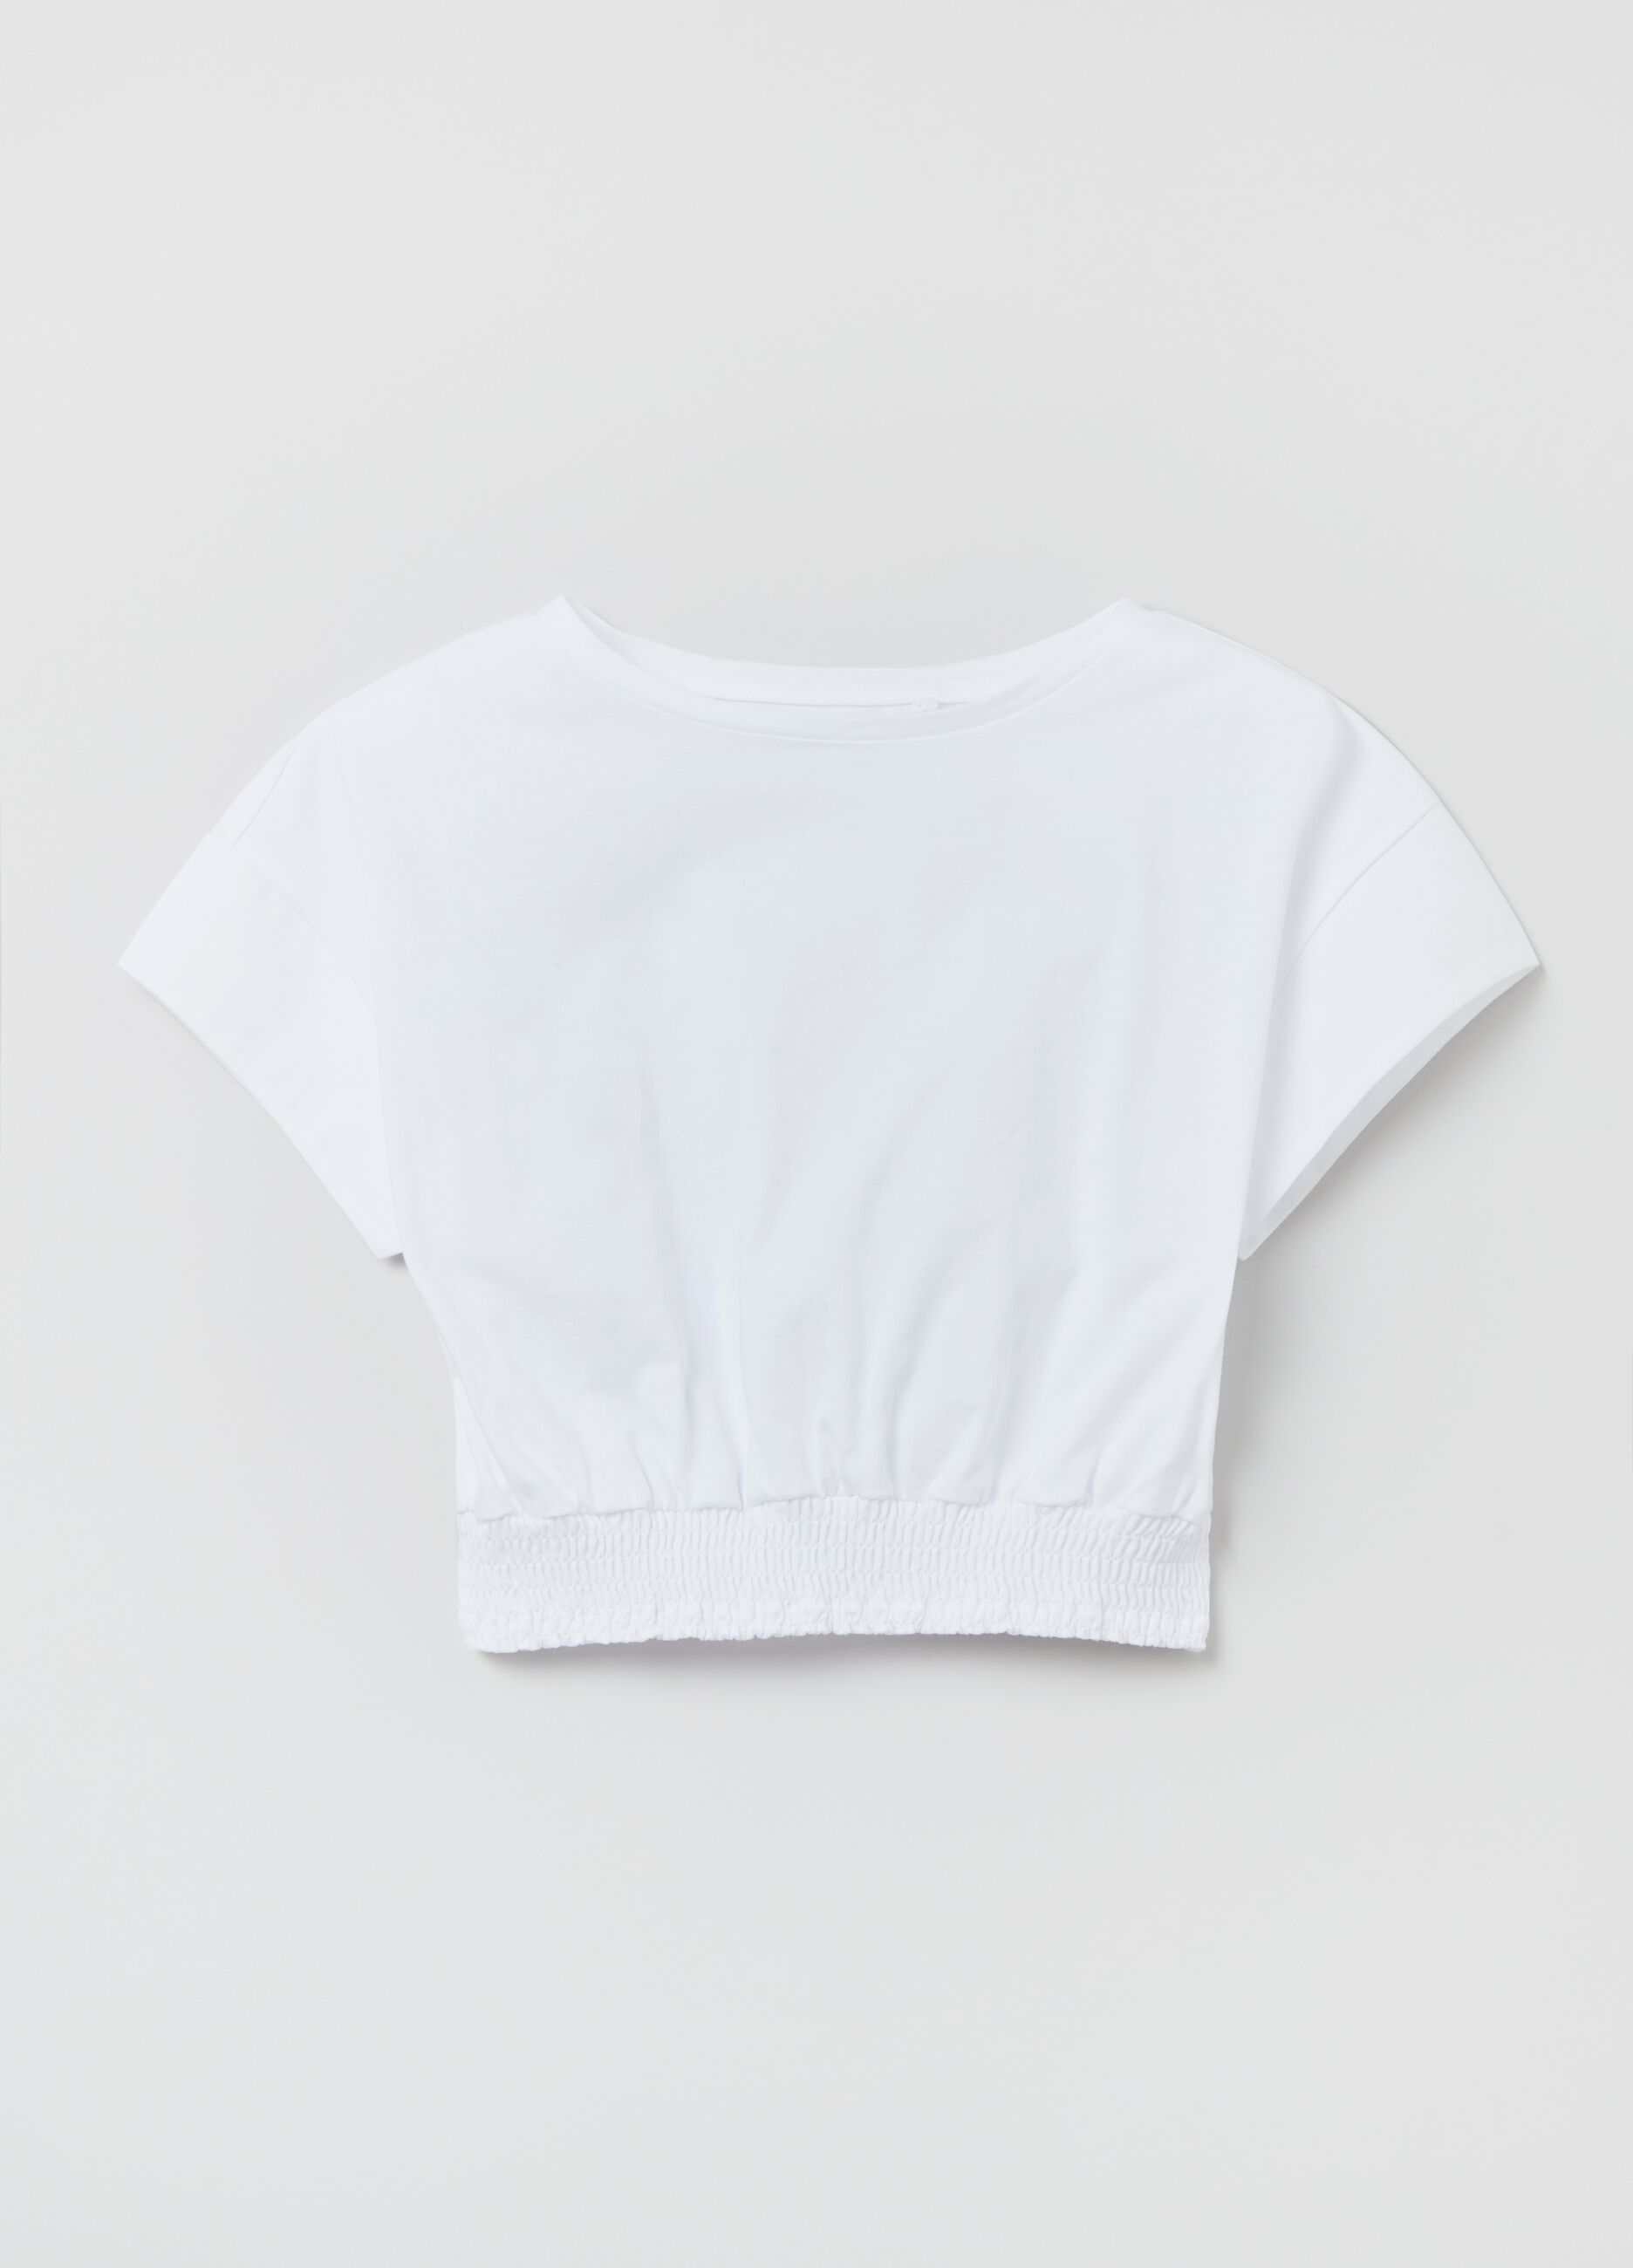 Crop T-shirt in cotton